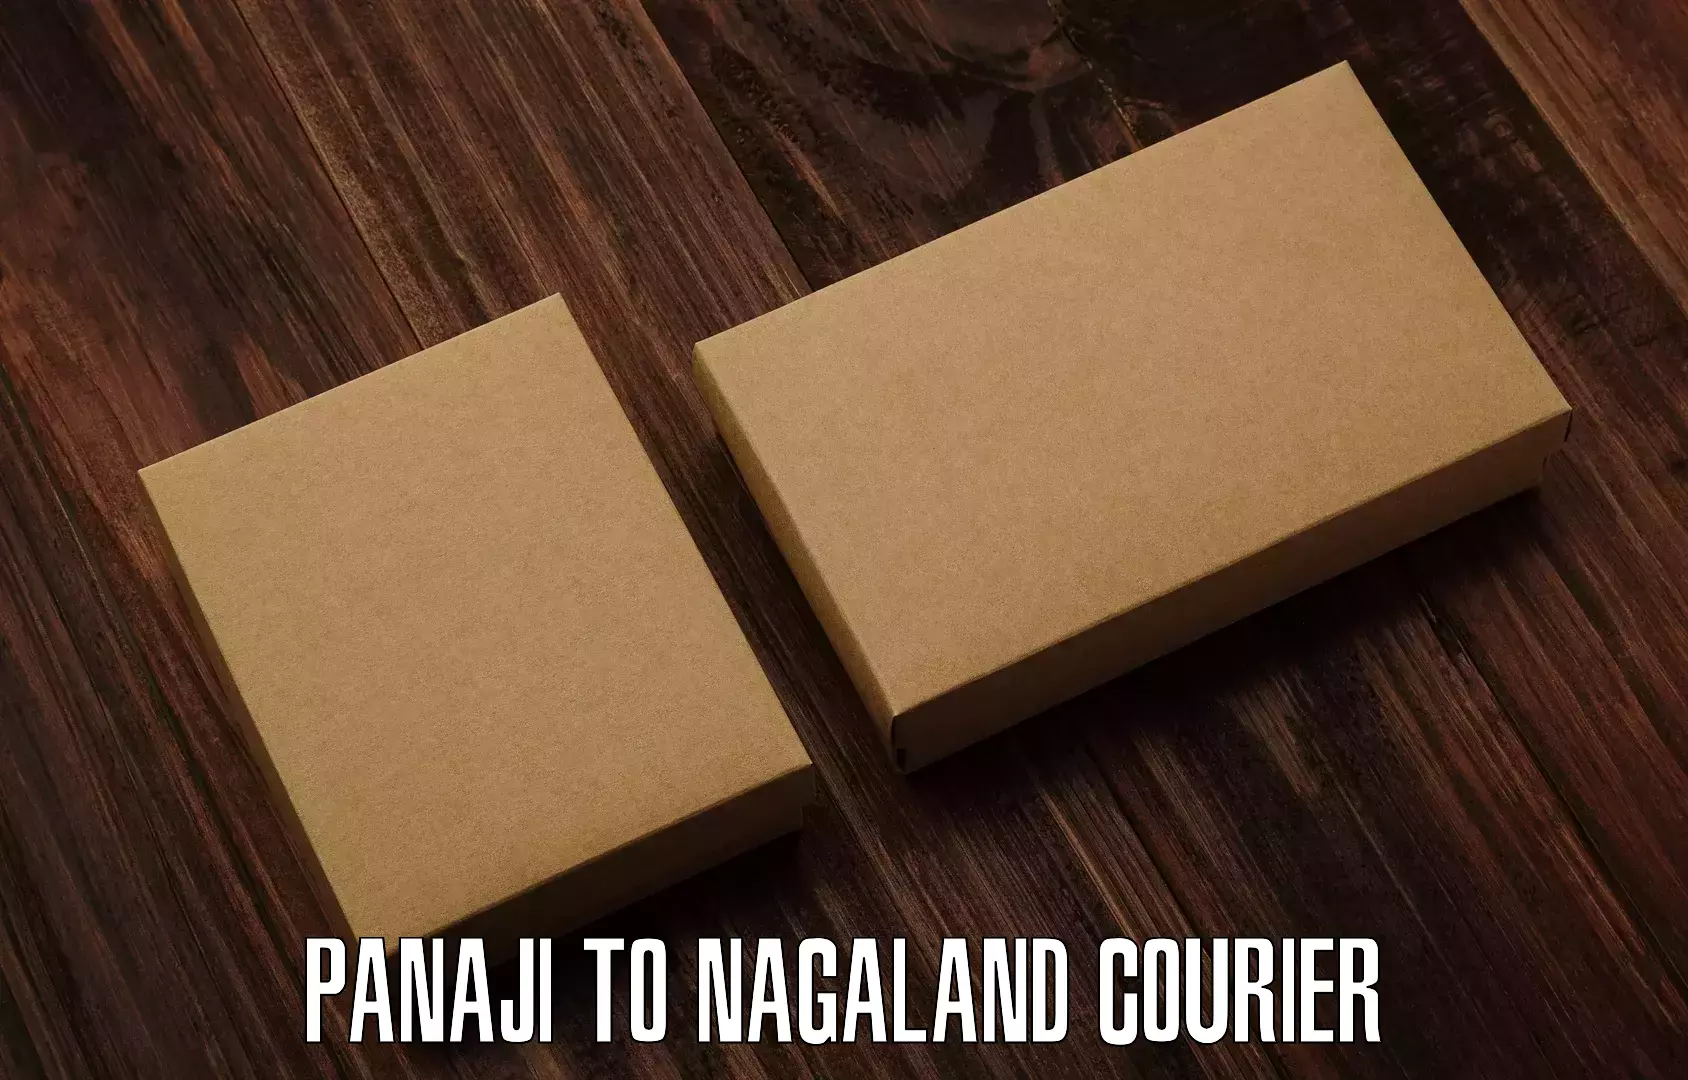 Express courier facilities Panaji to Nagaland